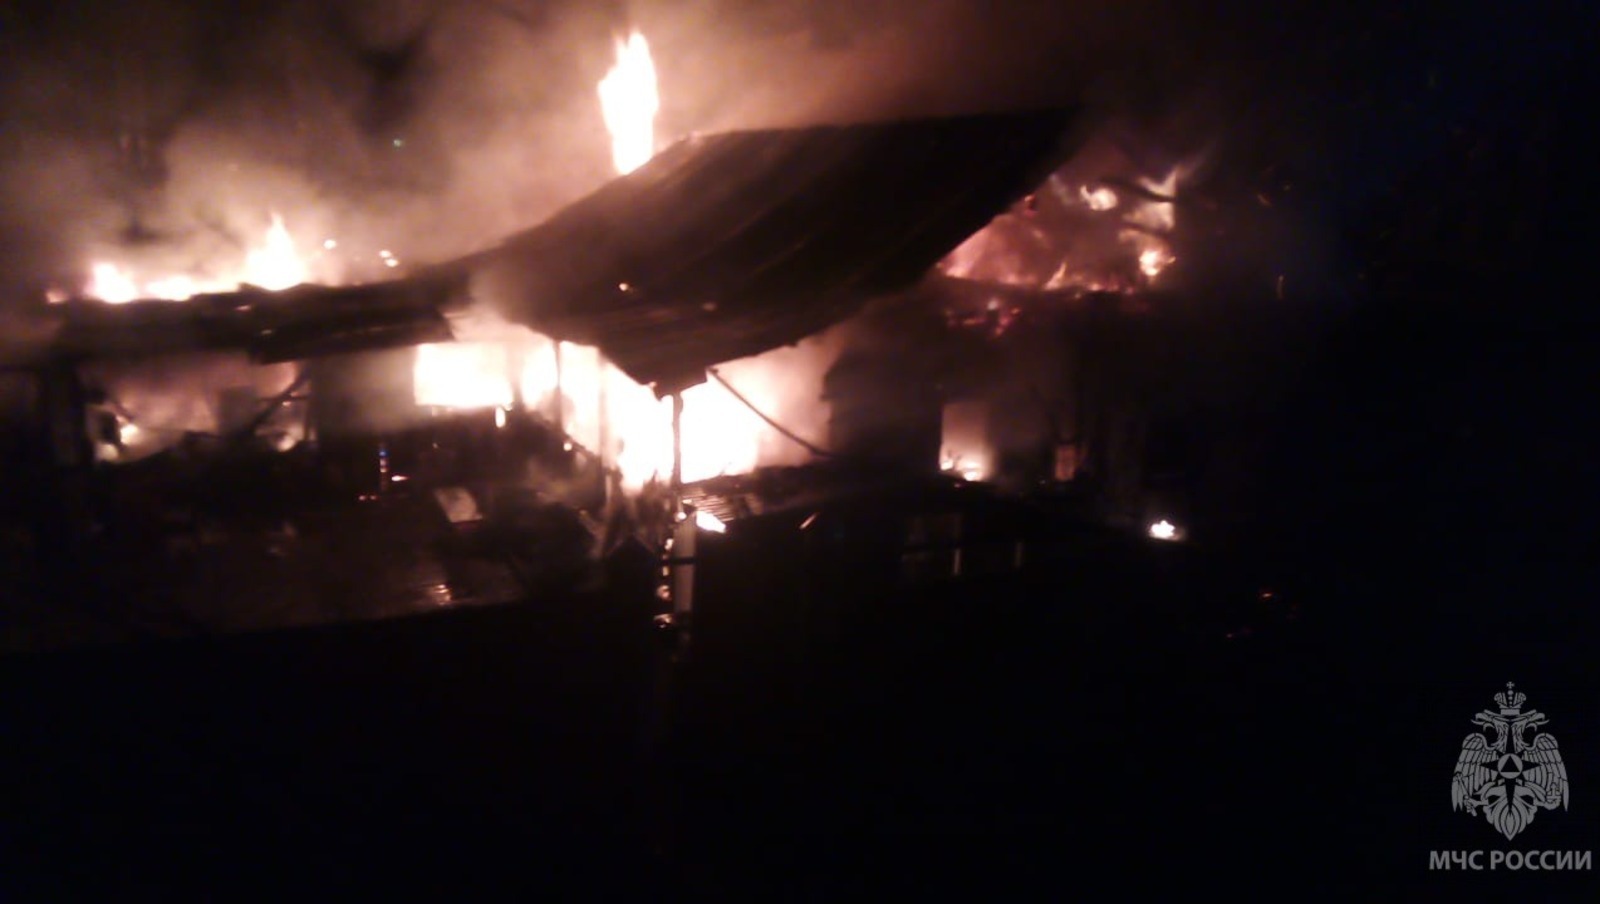 В Башкирии огнеборцы тушили пожар по повышенному рангу сложности